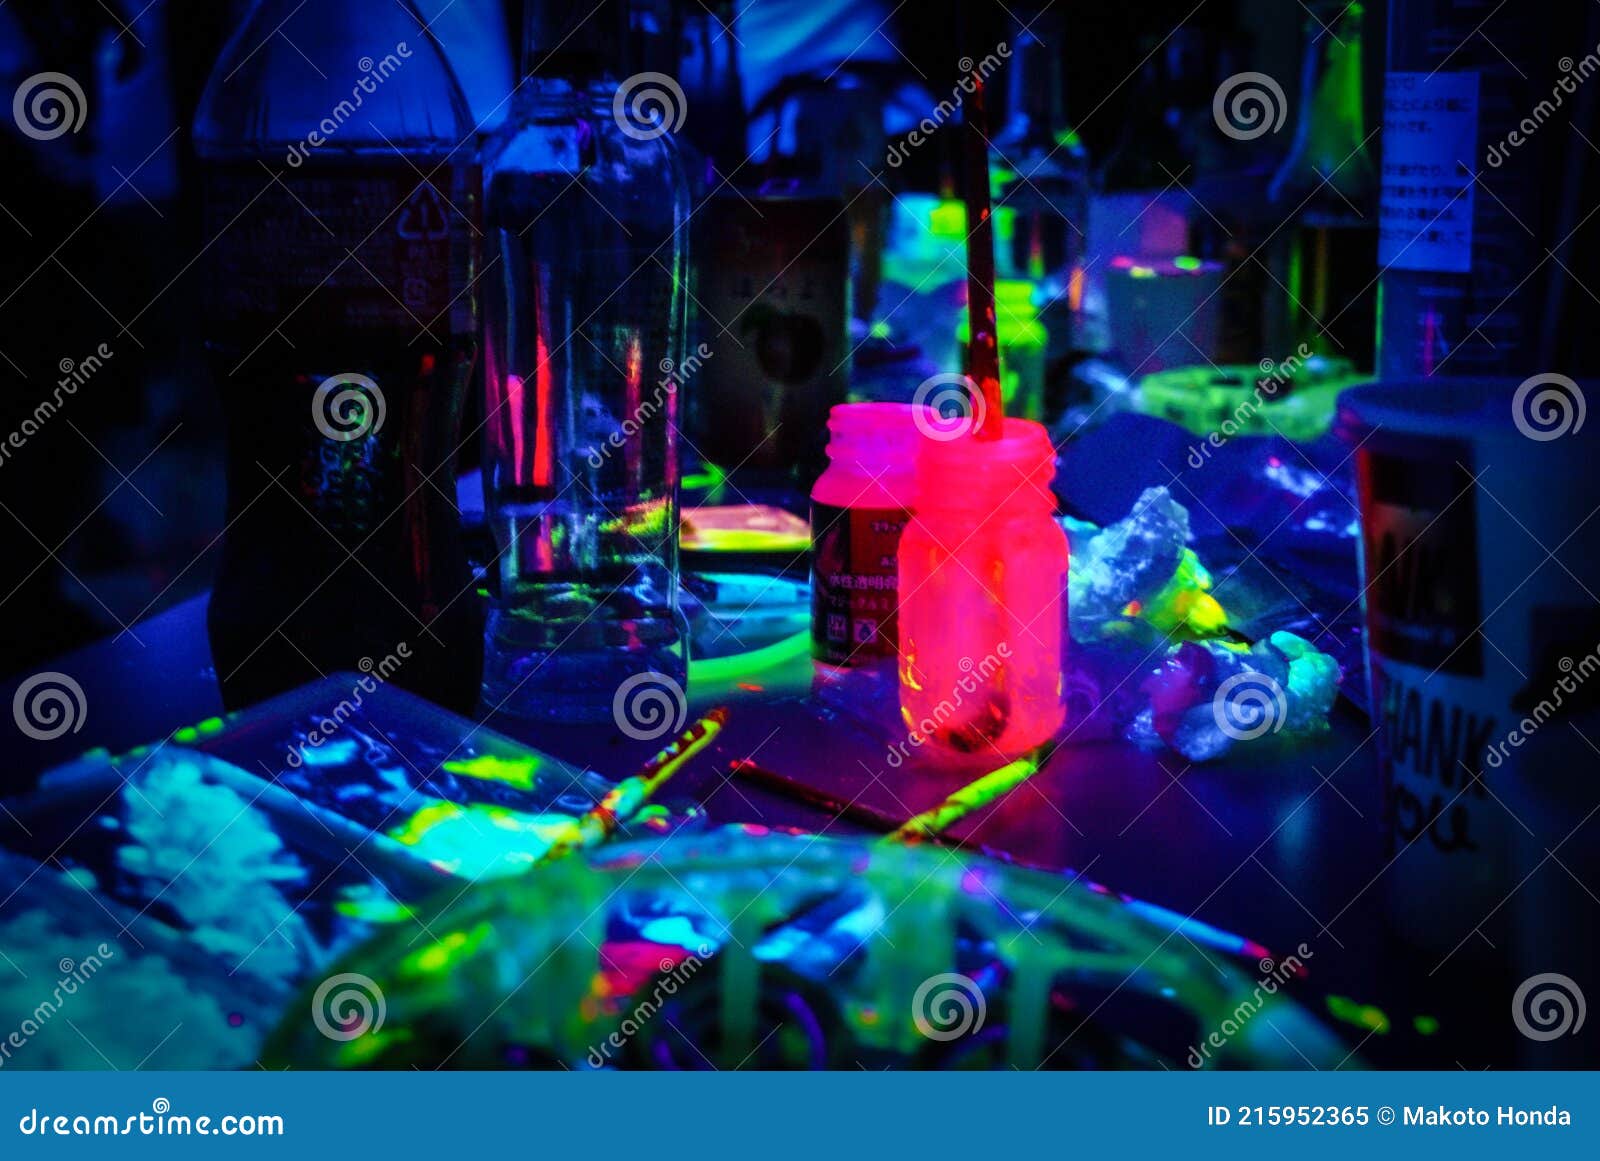 Vernice Fluorescente Immagine Del Night Club Immagine Stock - Immagine di  fluorescente, innaffiamento: 215952365